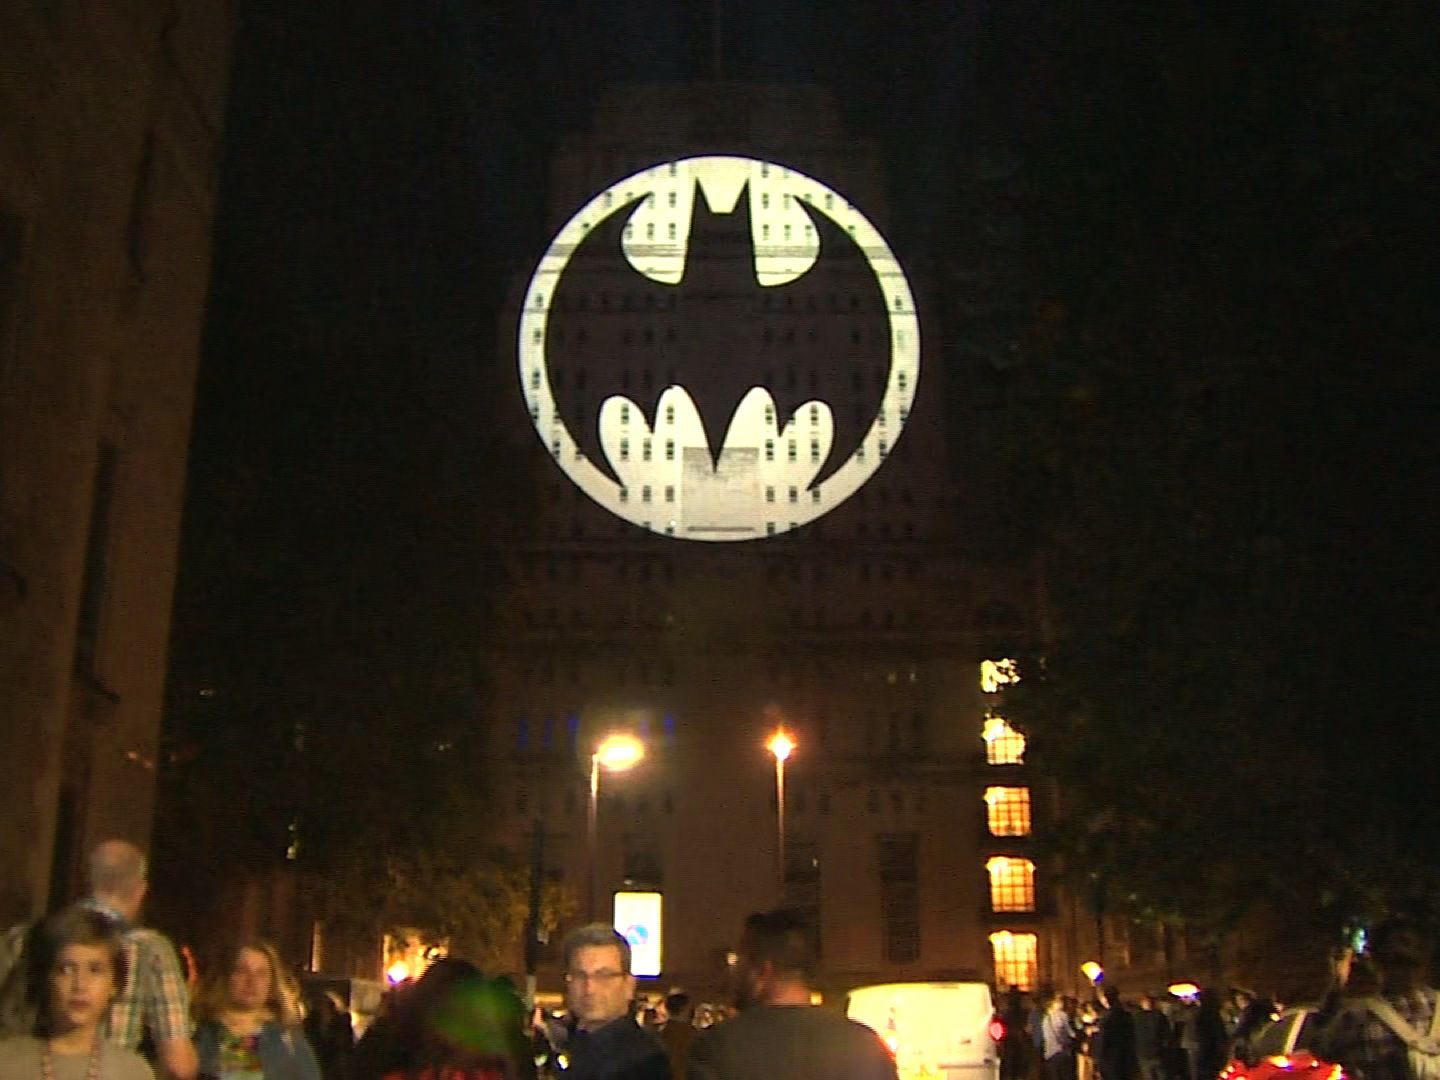 Batman Day: Watch cities across the world flash the Bat Signal | CNN